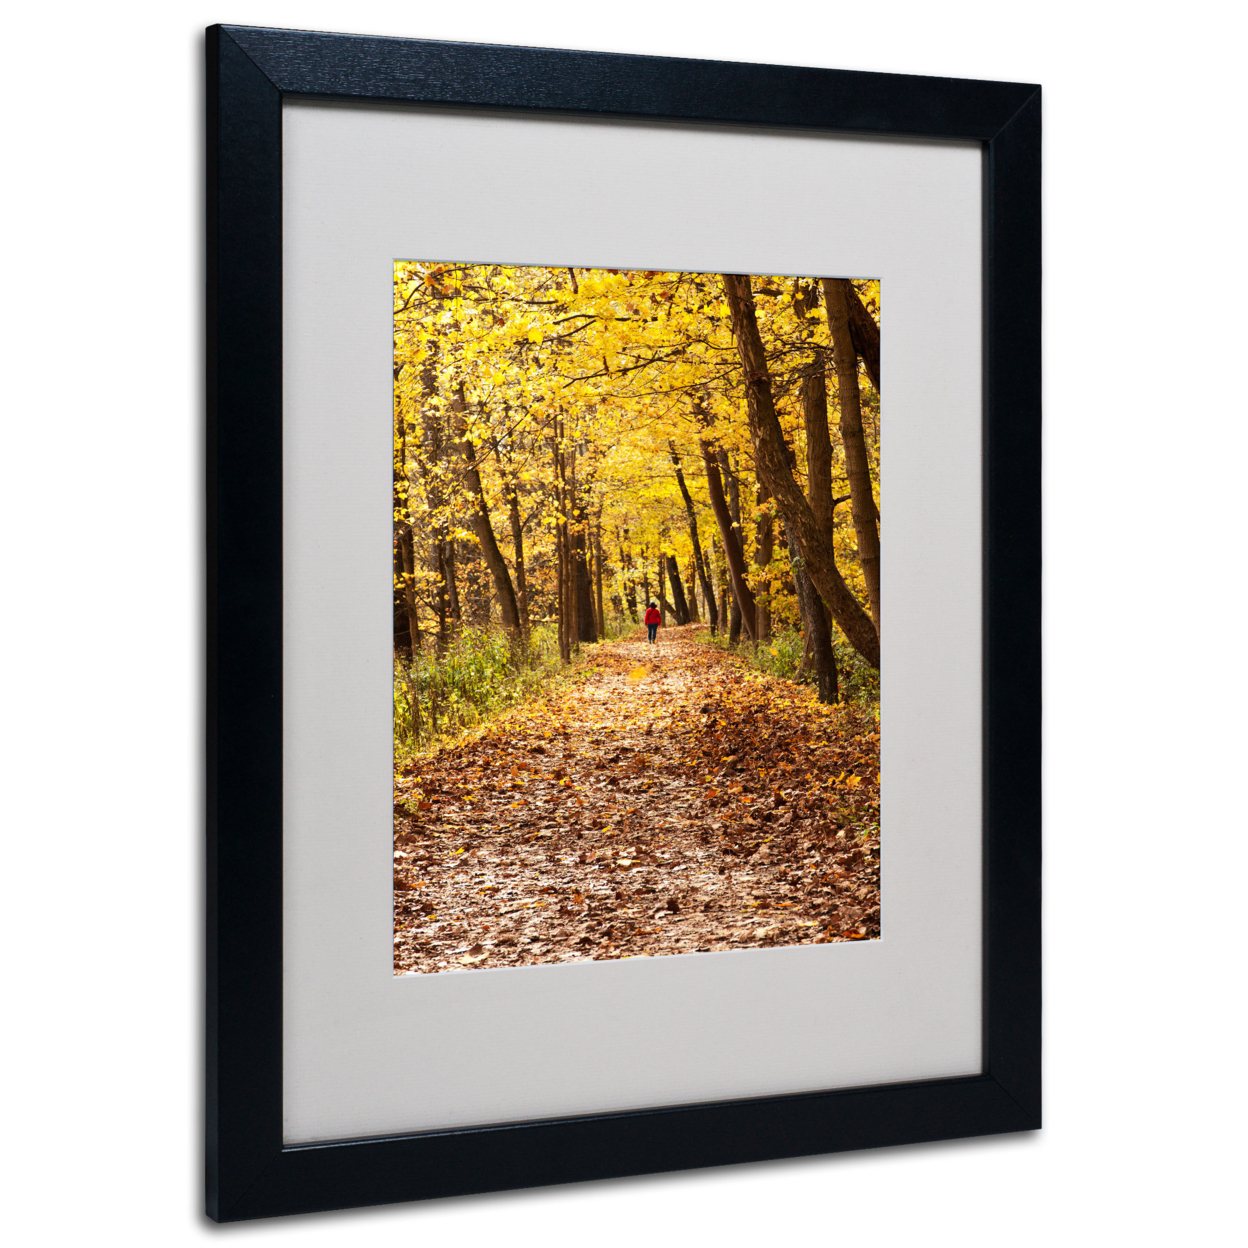 Kurt Shaffer 'Golden Autumn Walk' Black Wooden Framed Art 18 X 22 Inches